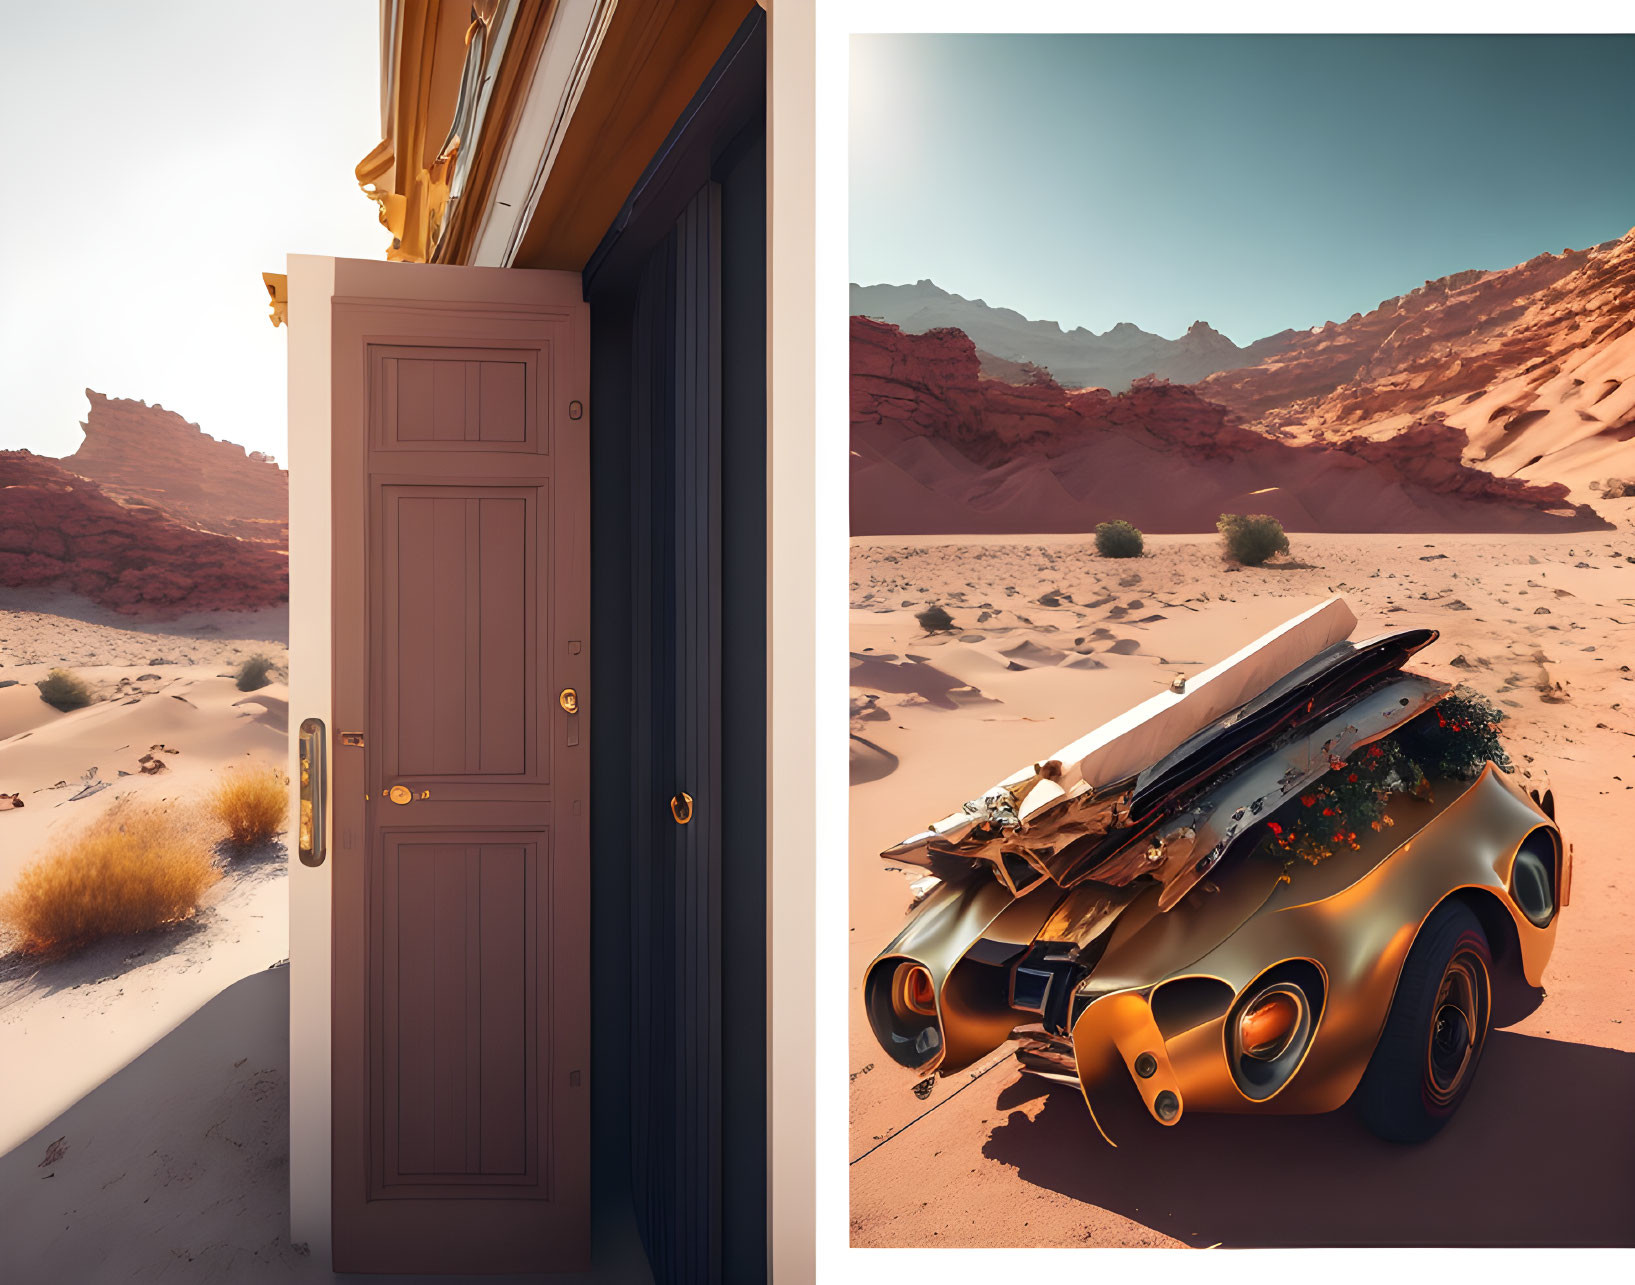 Wooden door reveals futuristic orange car in desert with rocky terrain